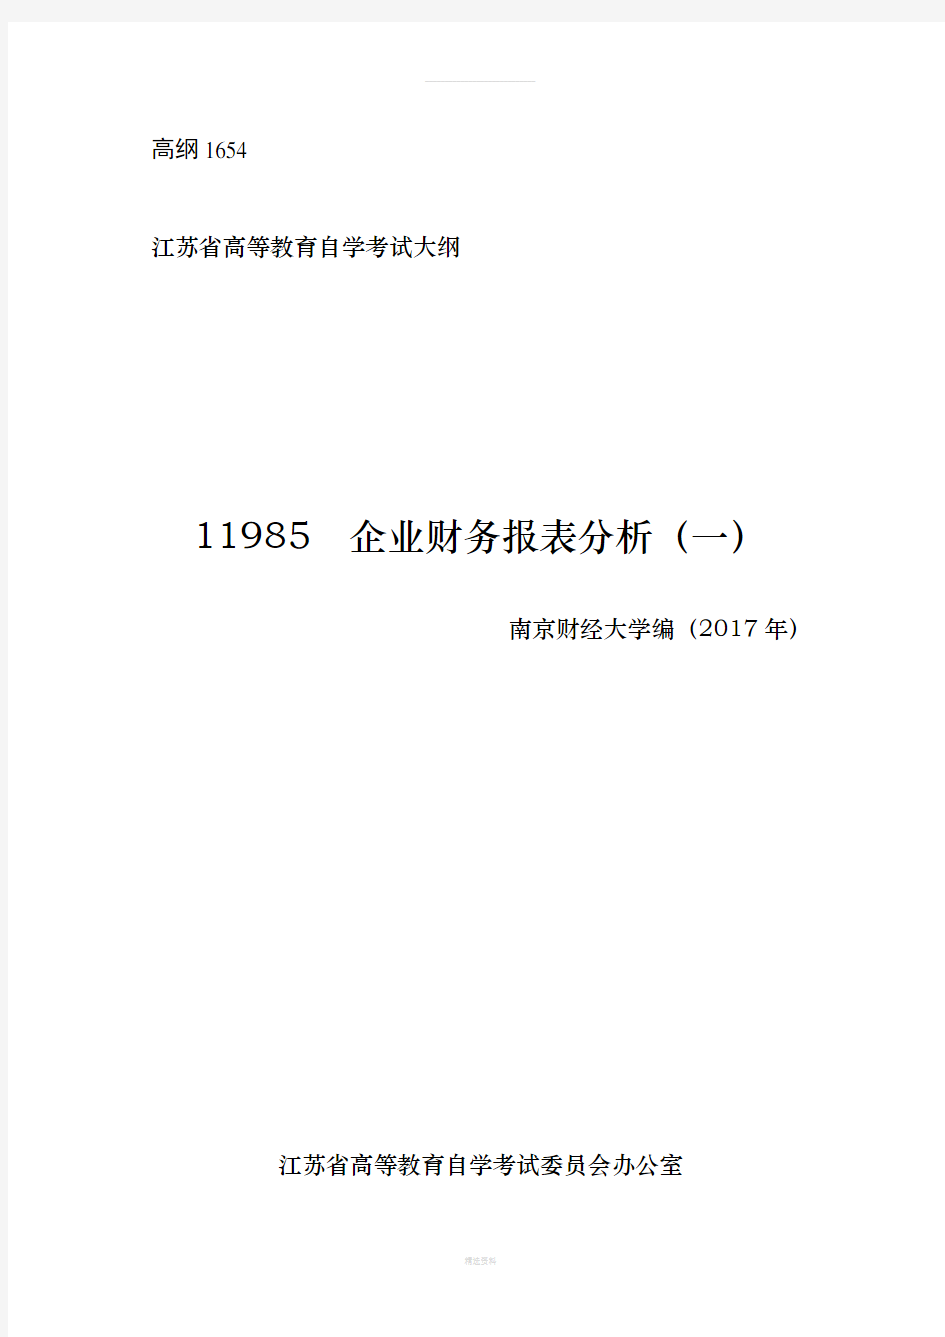 江苏自学考试-11985--企业财务报表分析(一)